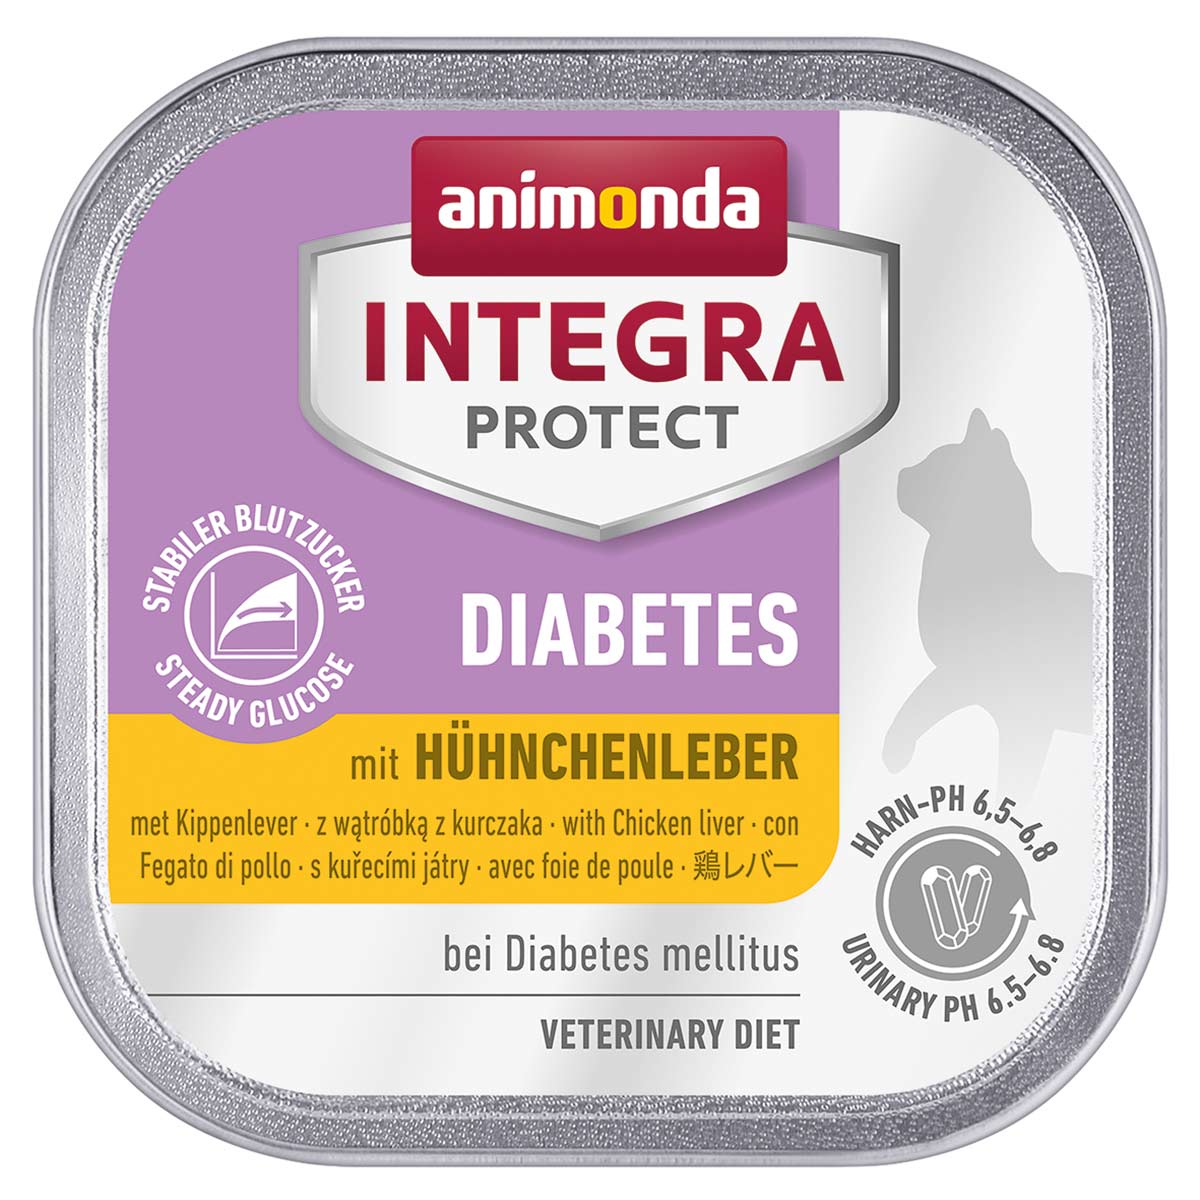 animonda INTEGRA PROTECT Diabetes mit Hühnchenleber 32x100g